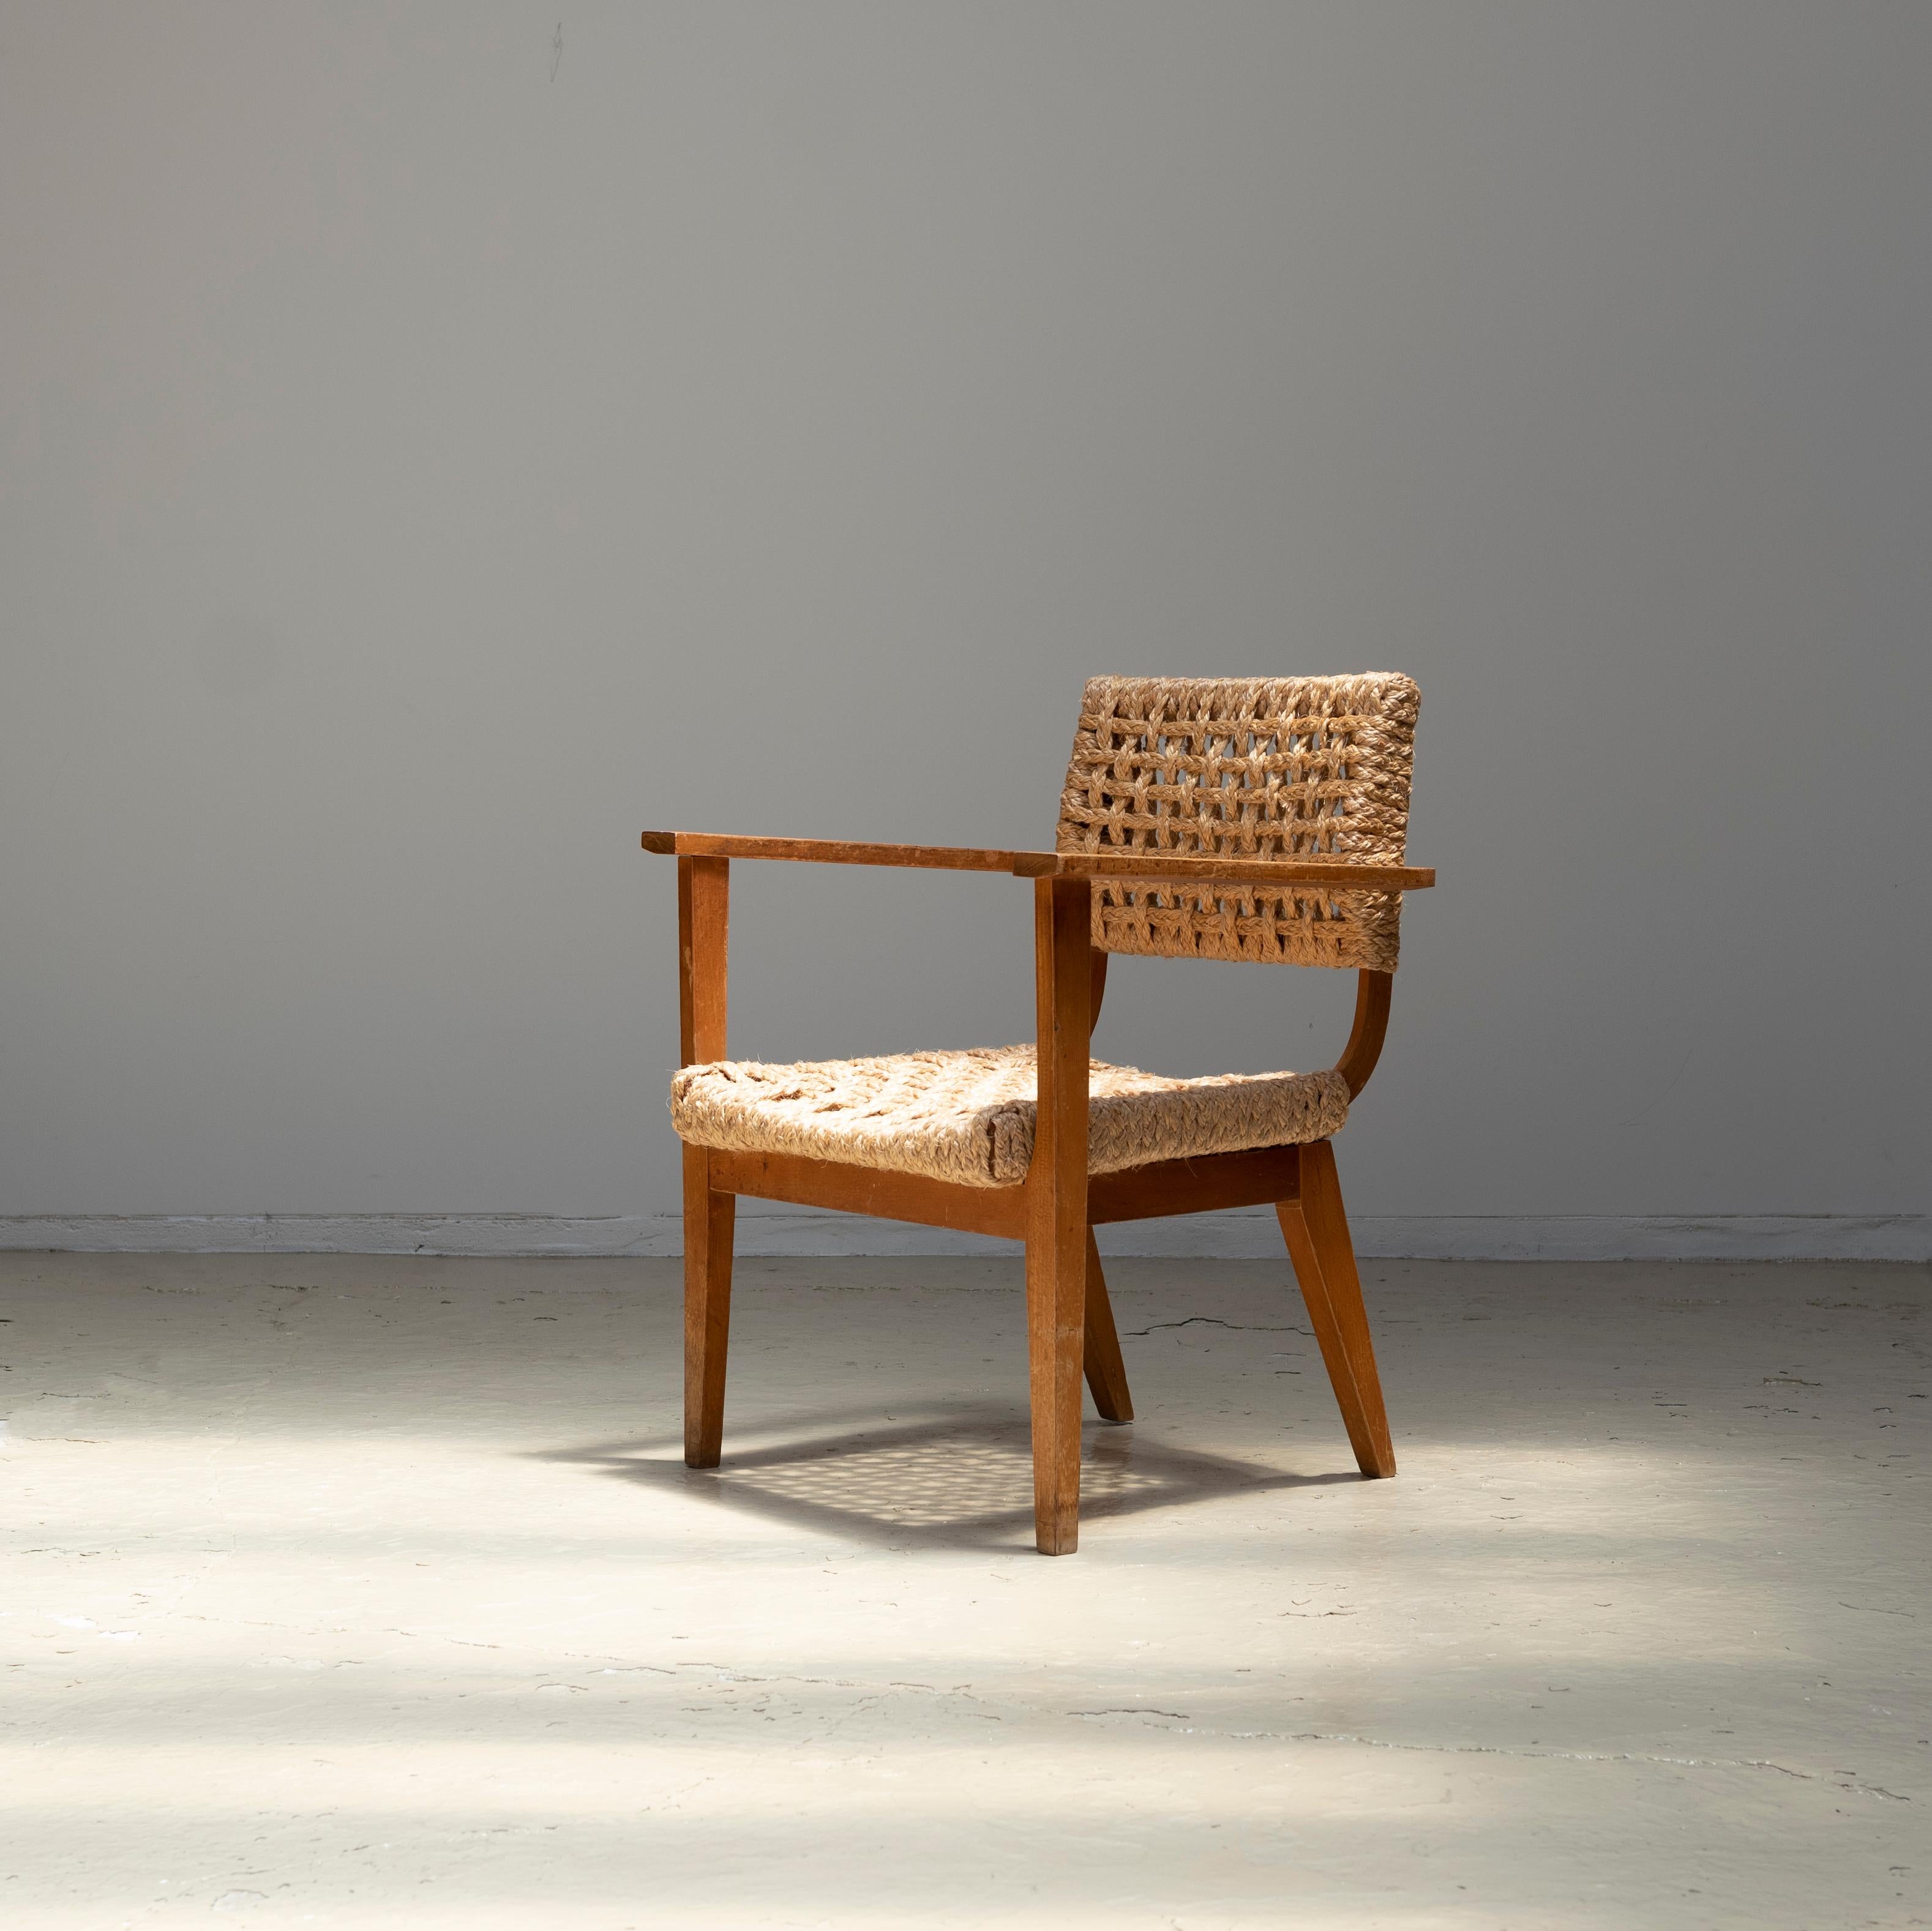 Sessel aus Buche und Seilgeflecht, entworfen von Adrien Audoux und Frida Minet in den 1950er Jahren.
Es ist in sehr gutem Zustand.
Die Rückenlehne und die Sitzfläche wurden vor kurzem neu gewebt.